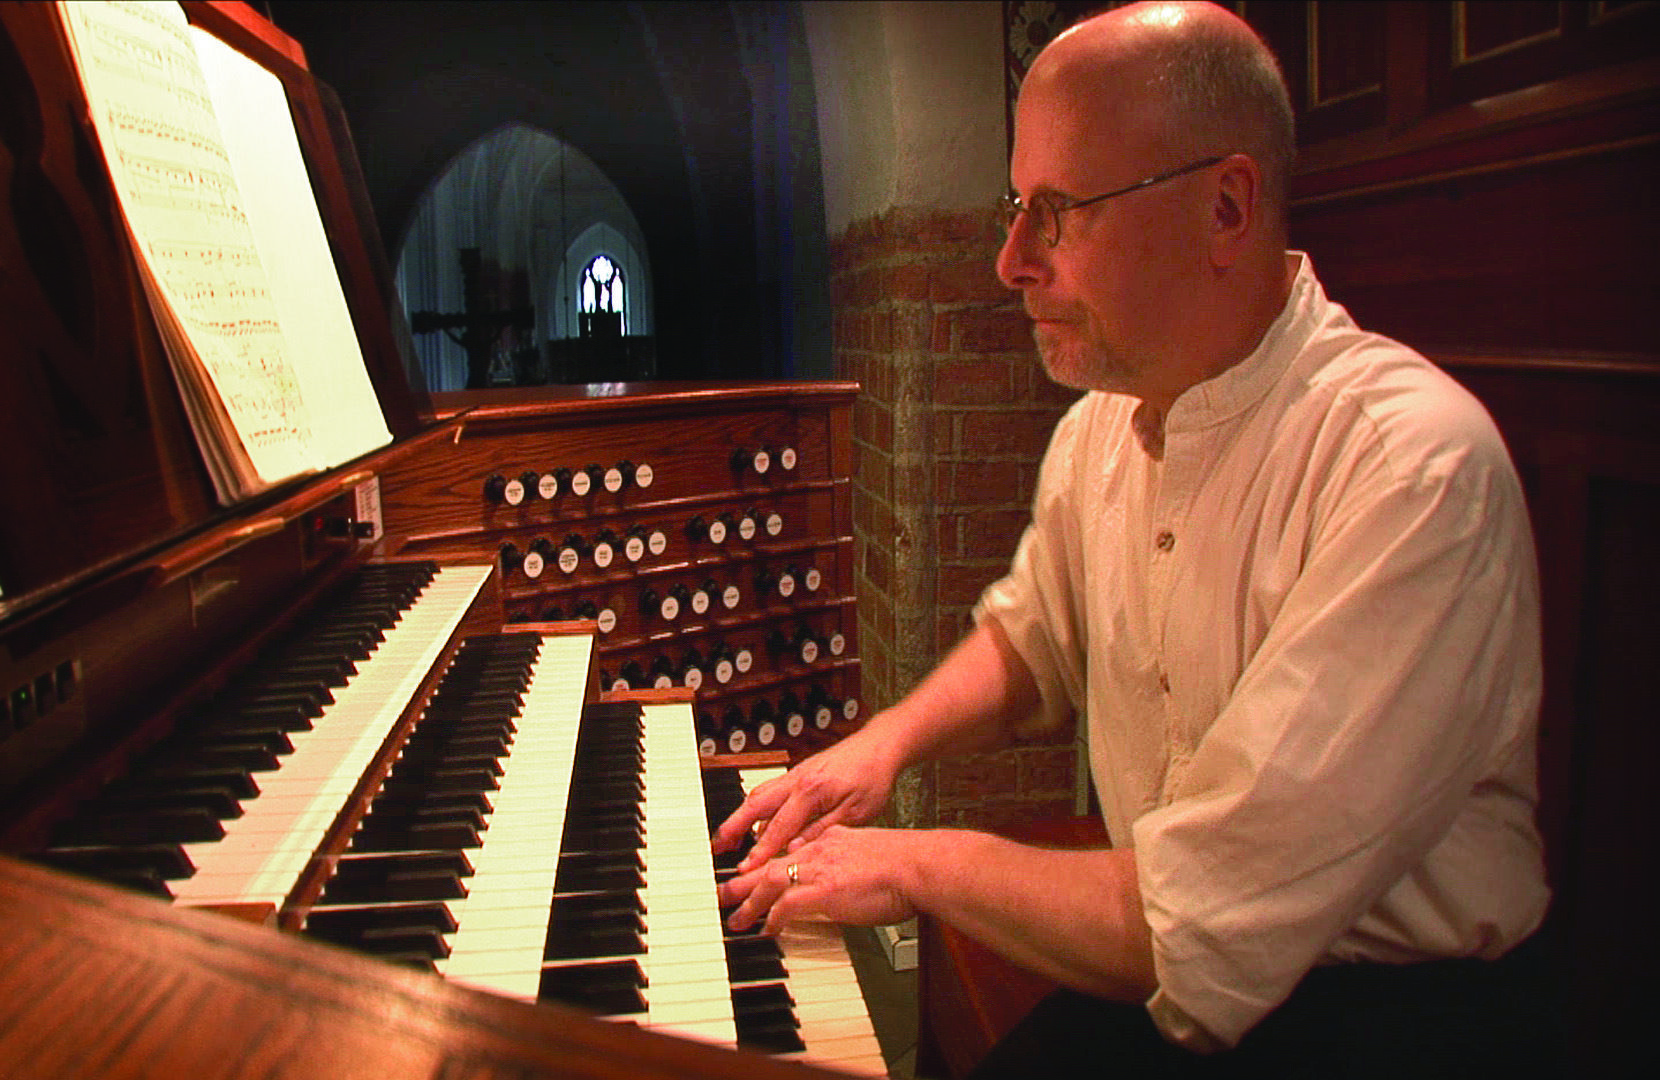 James D. Hicks playing the organ